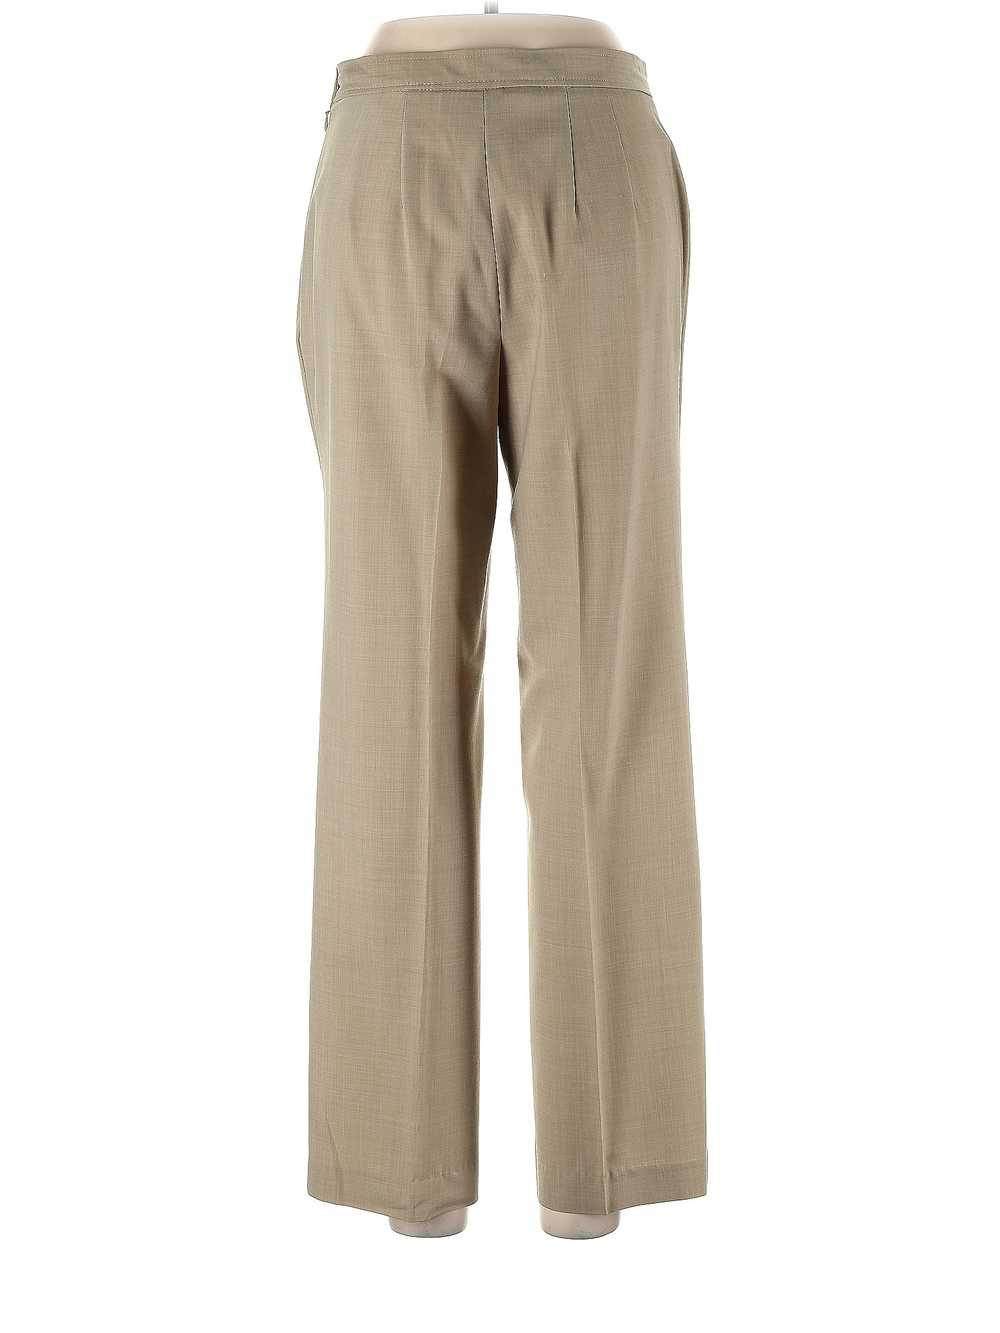 Talbots Women Brown Dress Pants 10 Petites - image 2